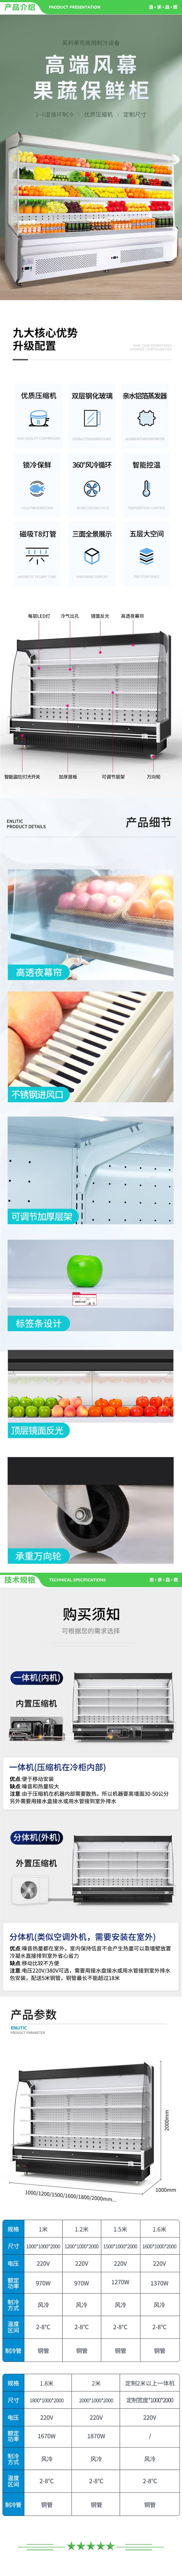 英利蒂克 Enlitic FMG3000Y 风幕展示柜 蔬菜水果保鲜风冷柜 冷藏柜 商用柜 3.0米【高端风冷款】一体机 2.jpg